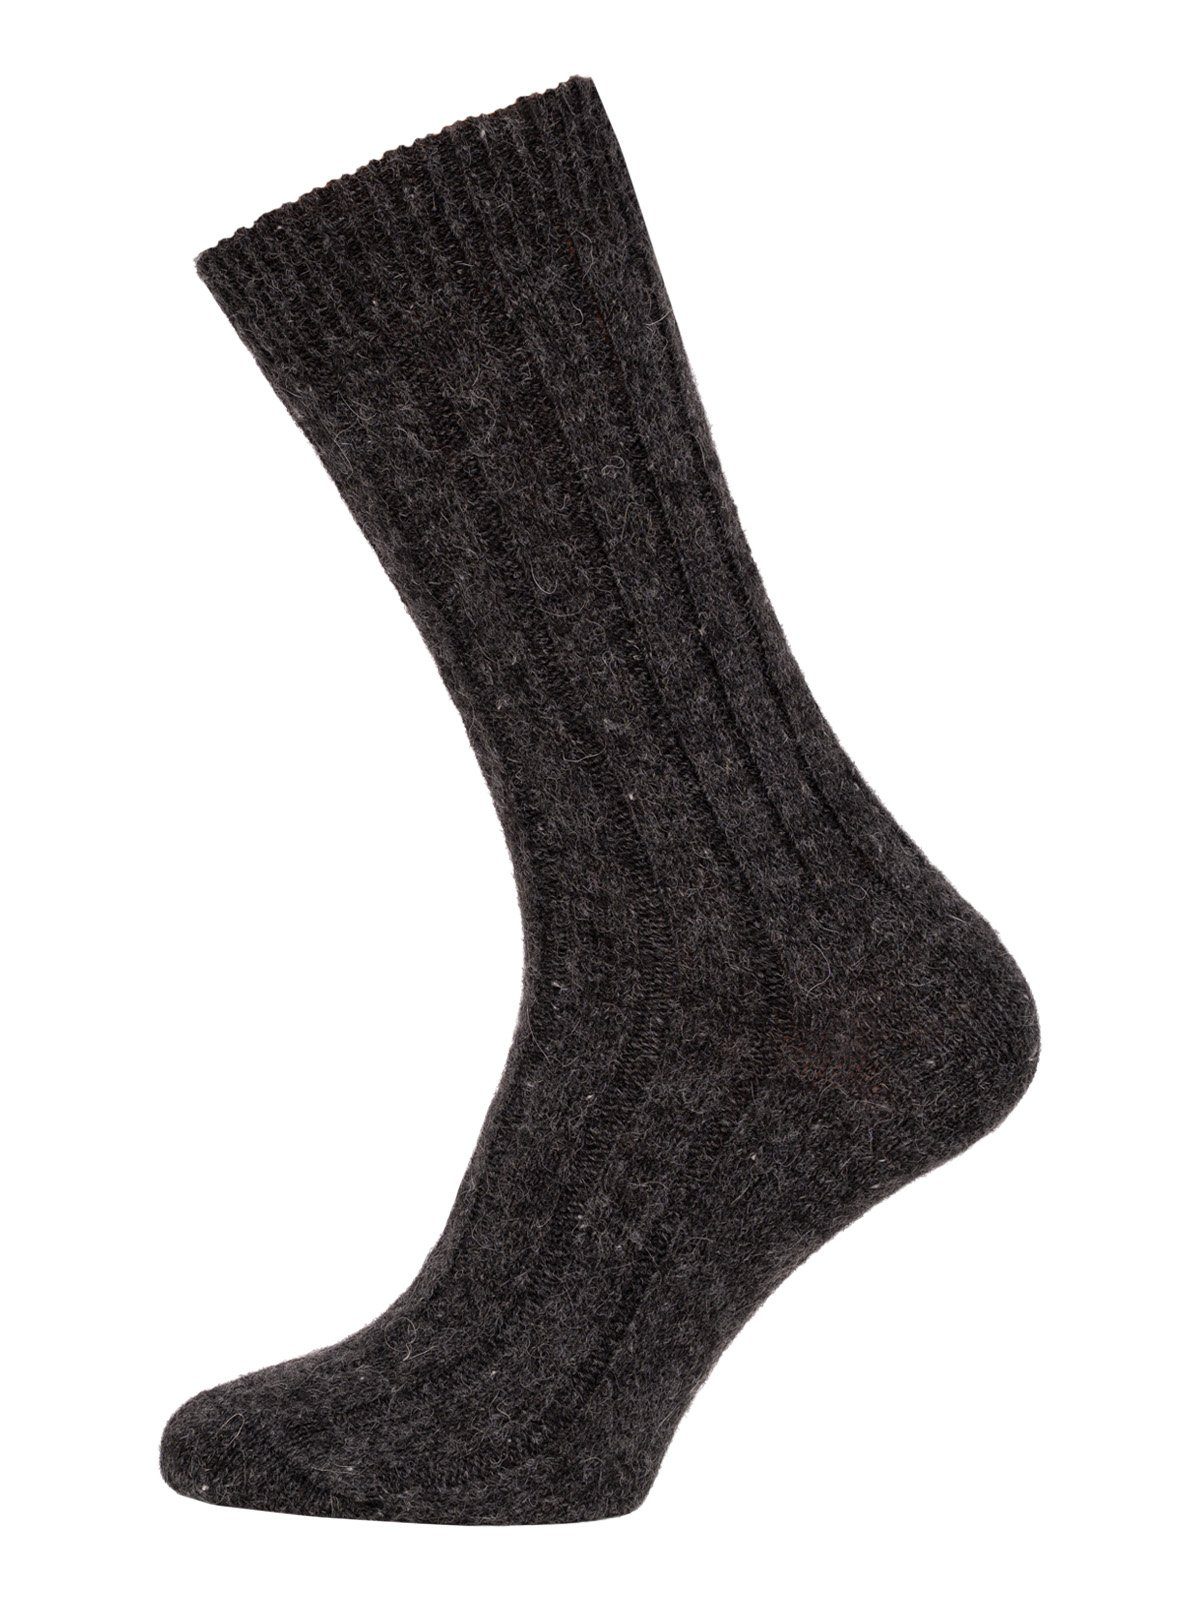 HomeOfSocks Socken Wollsocken aus 95% Wolle (Alpakawolle & Schurwolle) Anthrazit